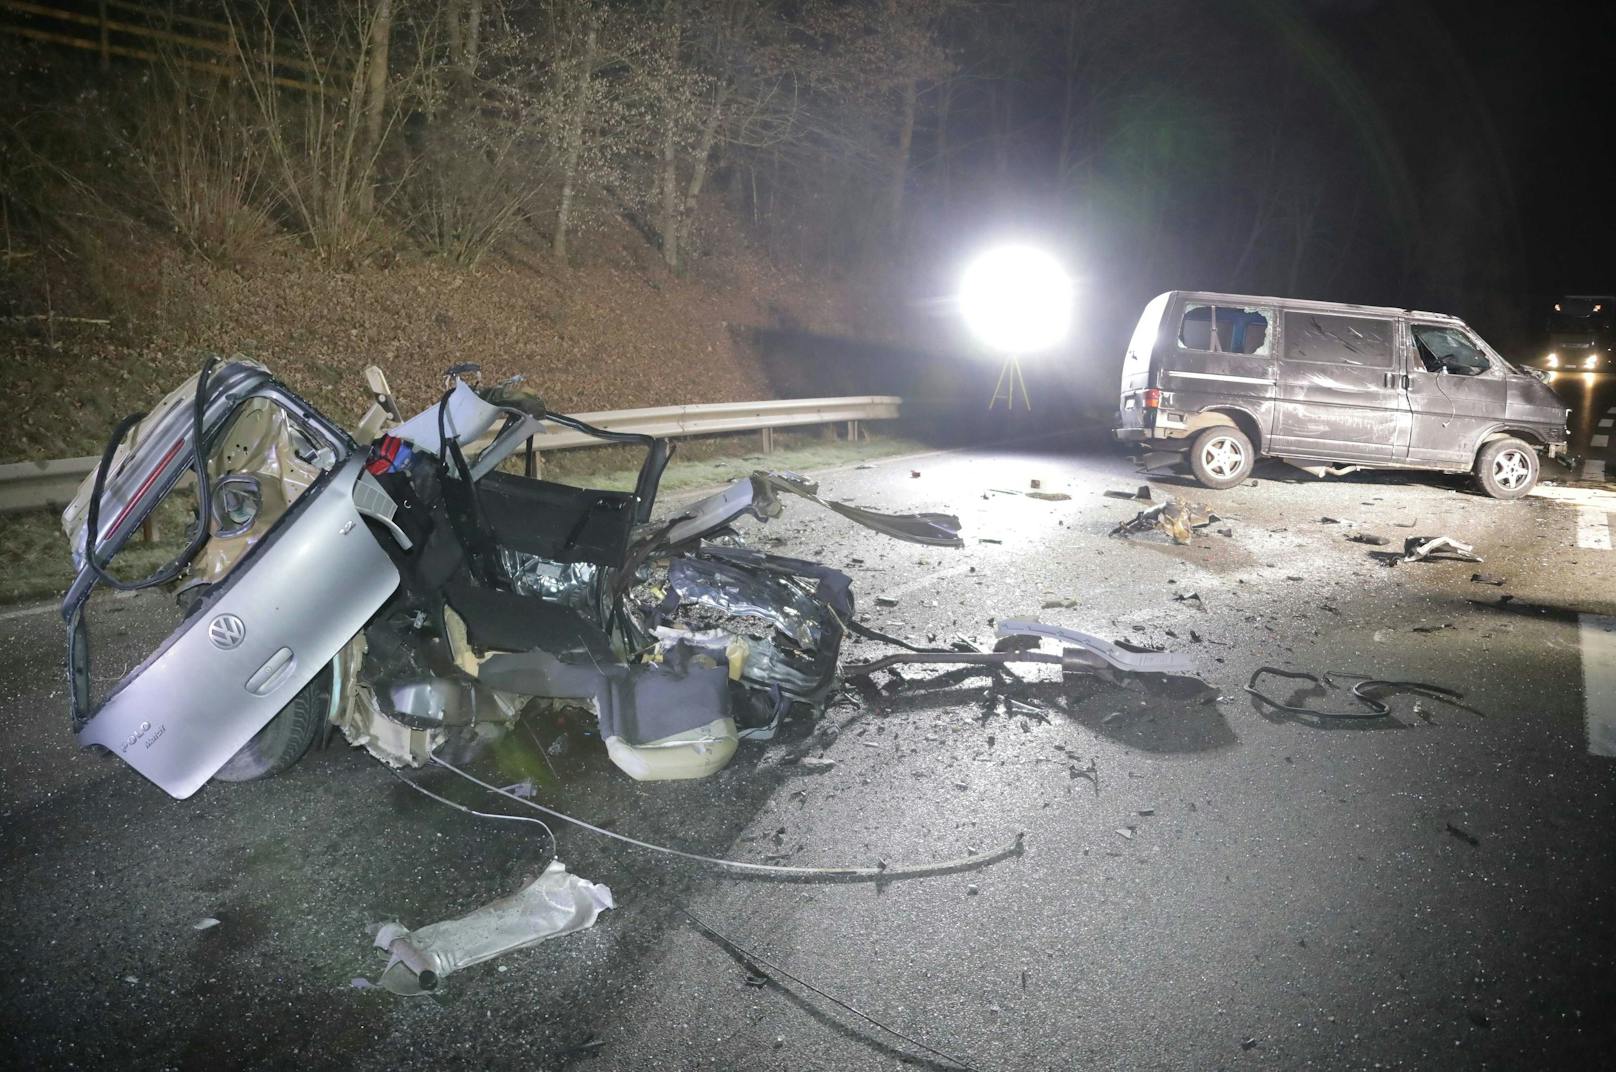 Schrecklicher Unfall in Bayern! Eine 21-Jährige geriet mit ihrem VW Polo auf die Gegenfahrbahn und rammte einen Kleinbus. Dabei wurde der Polo in zwei Teile gerissen. Für die Autofahrerin kam jede Hilfe zu spät.